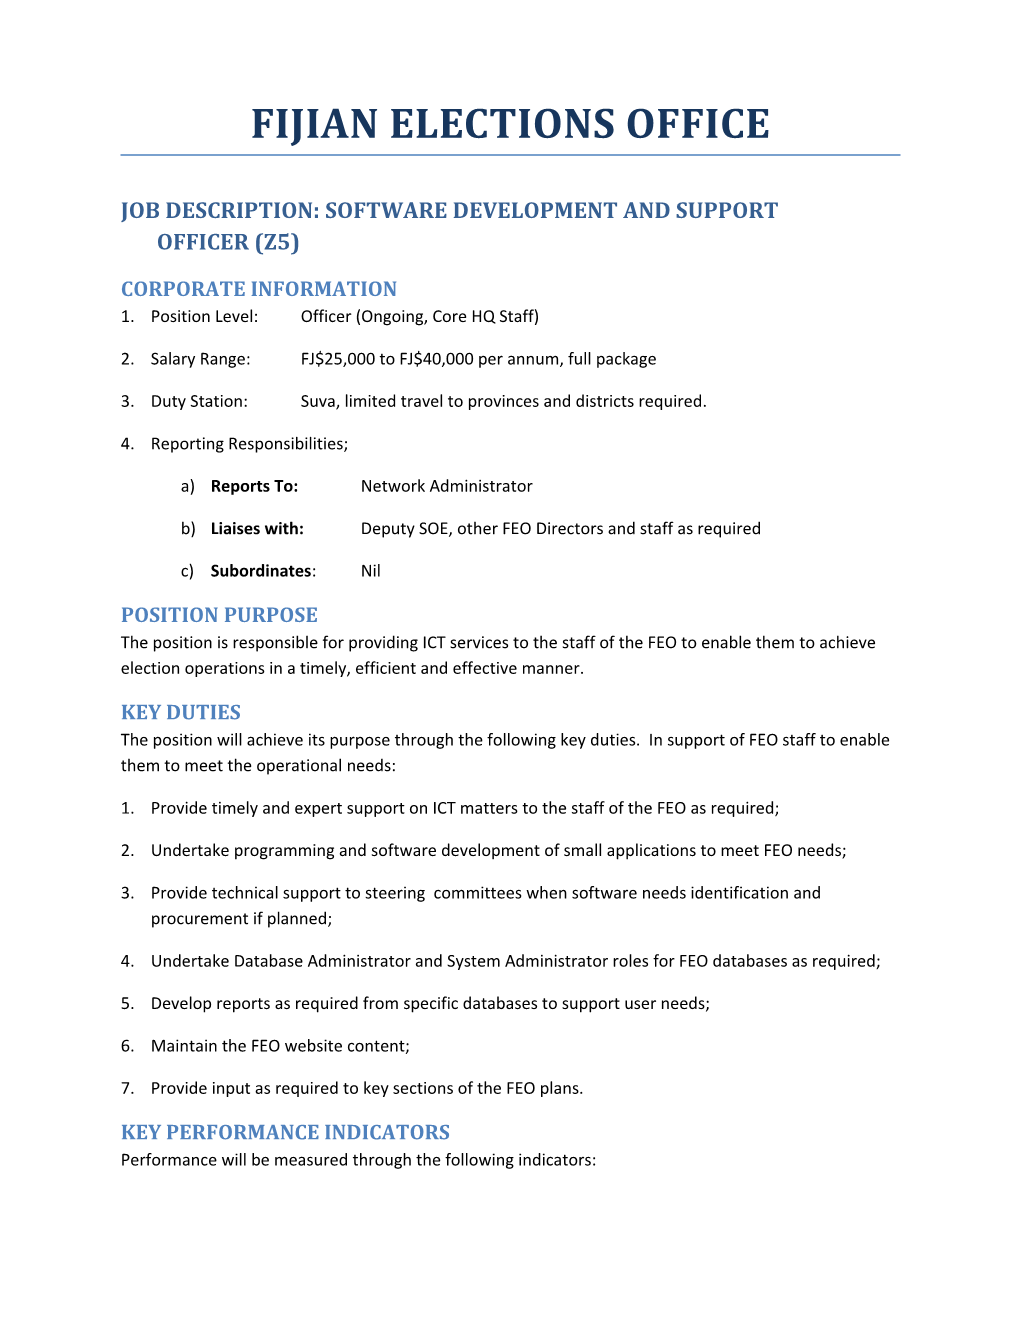 Job Description: Software Development and Support Officer (Z5)